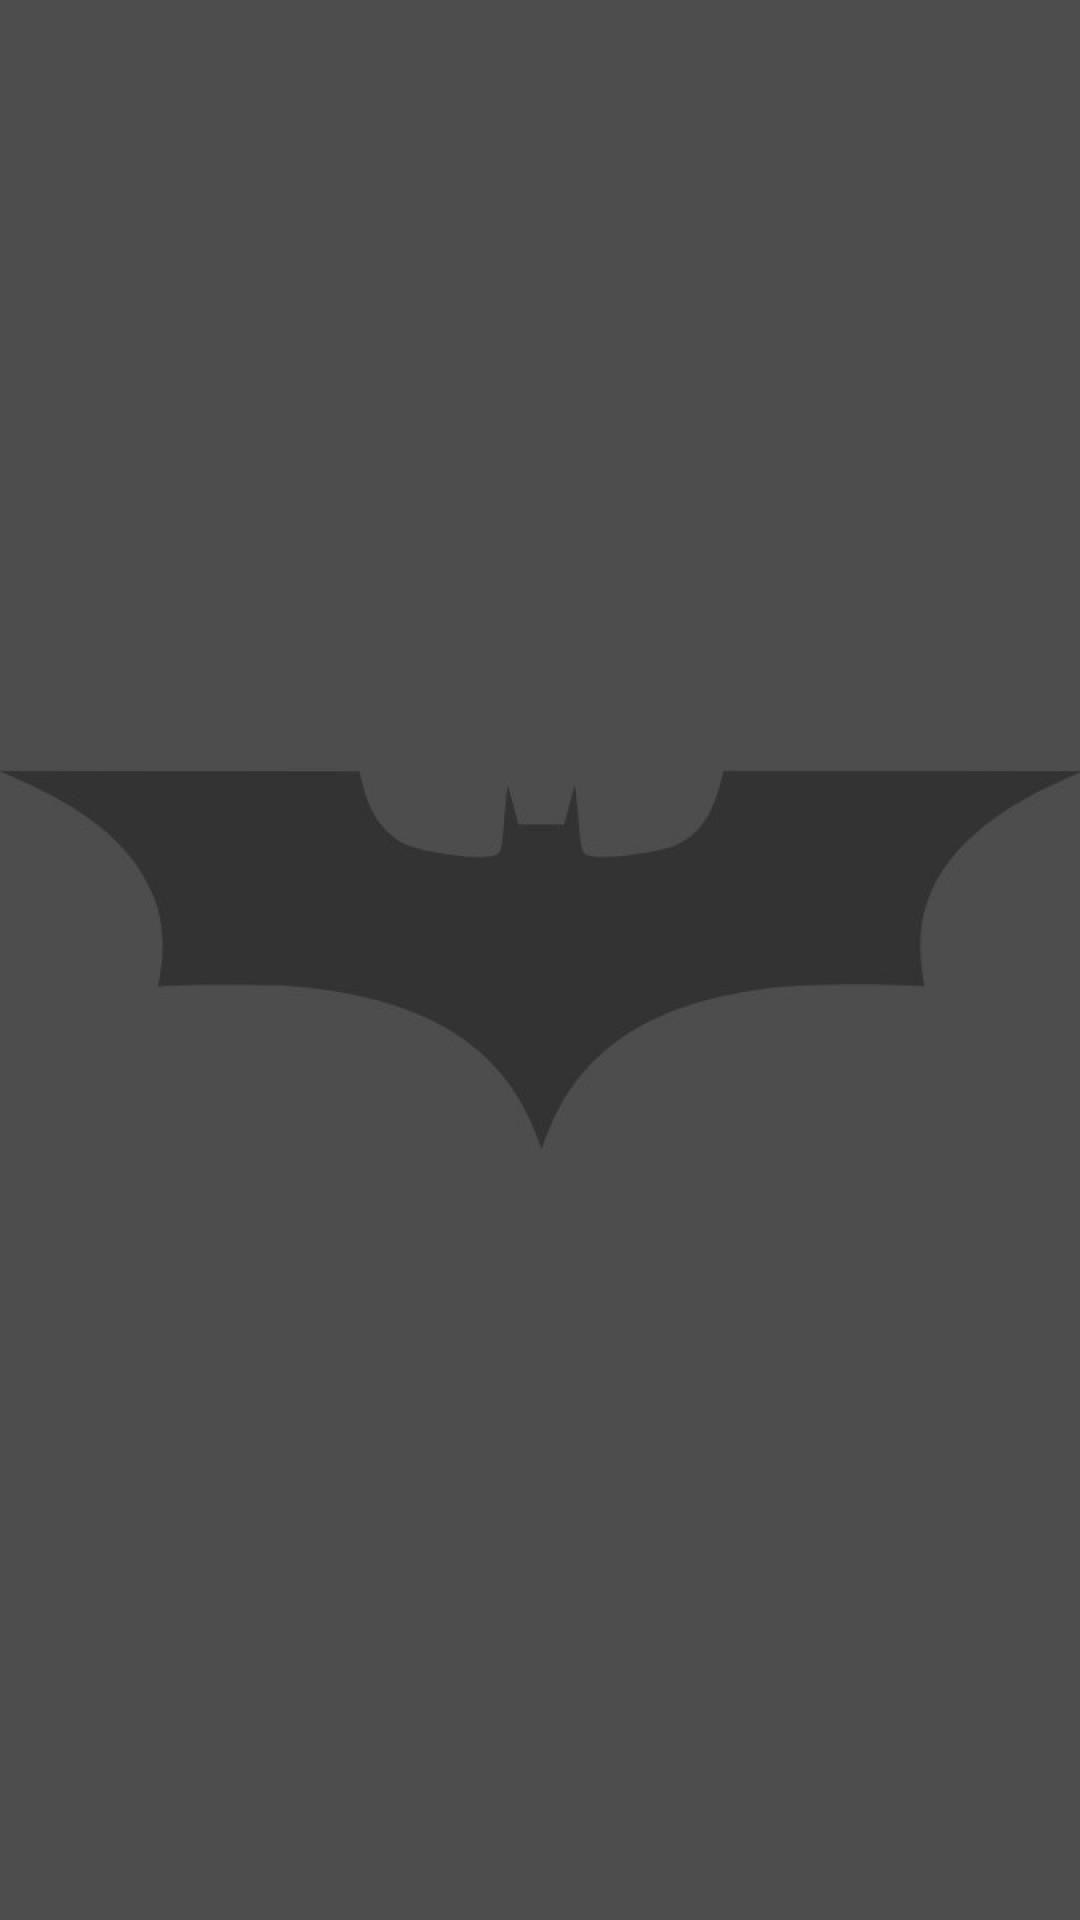 Dark dc comics bat logos simple logo wallpaper